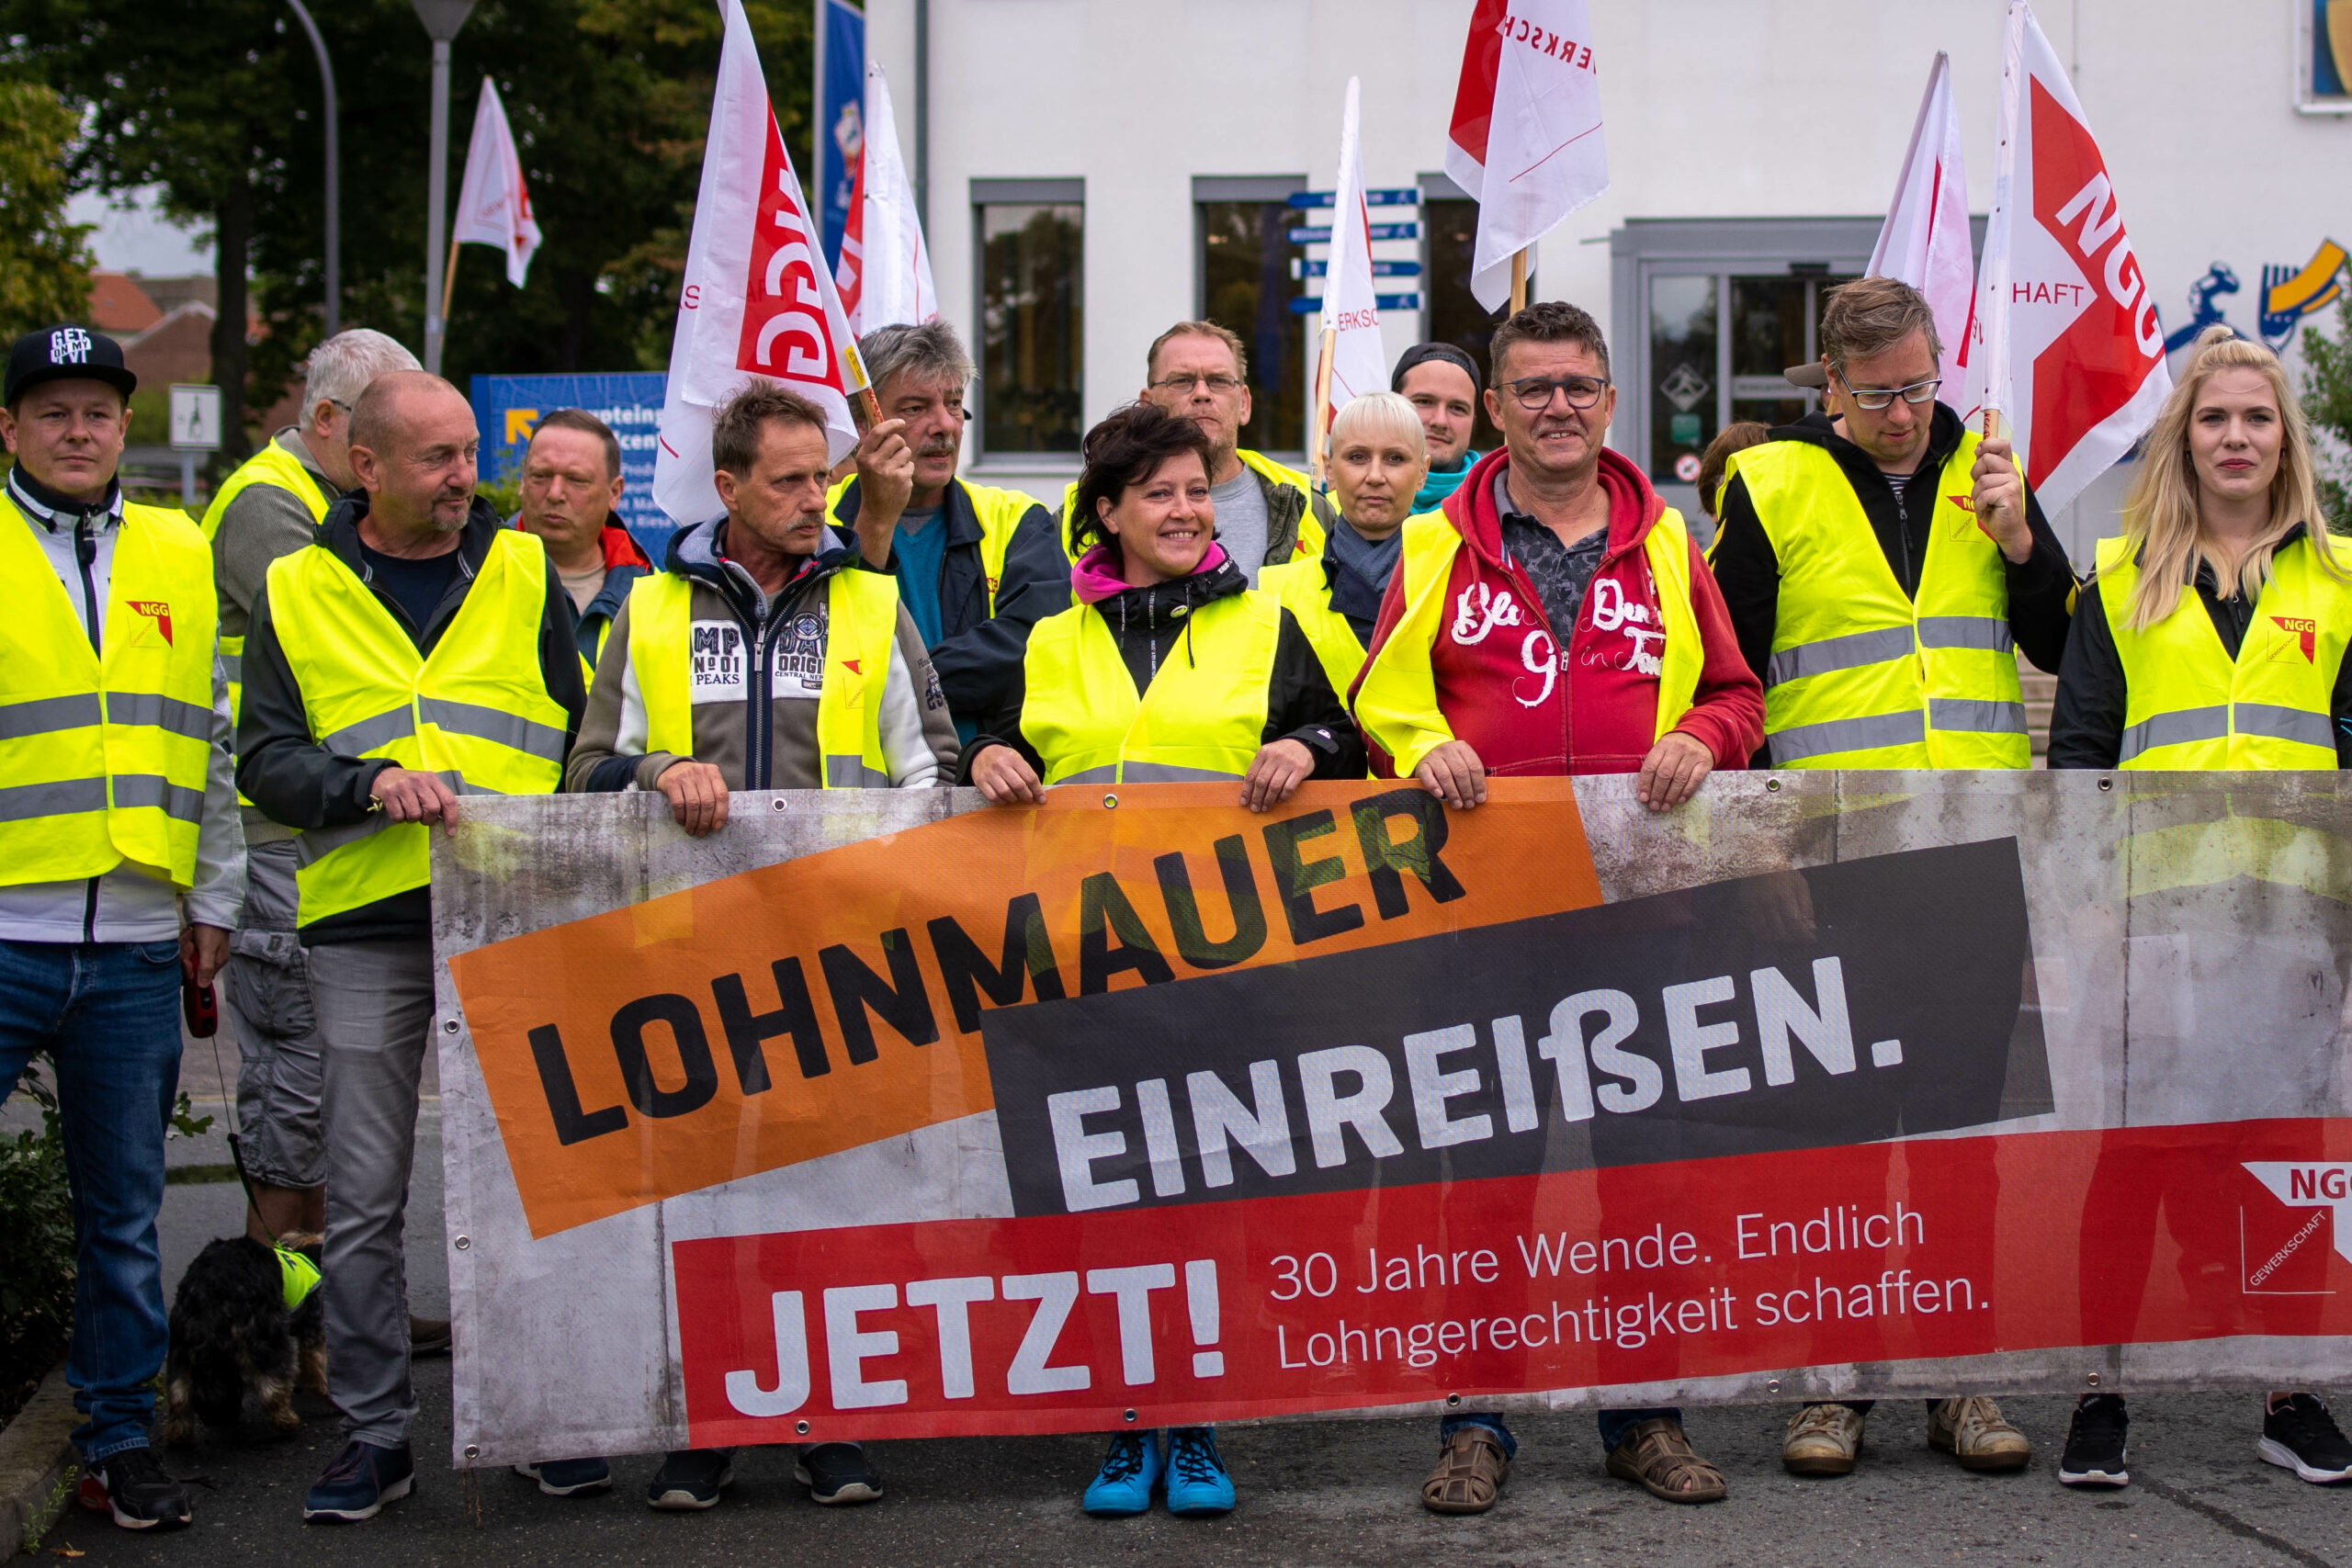 Riesa-Streik: Unterstützt die Beschäftigten im Kampf gegen die Krise!